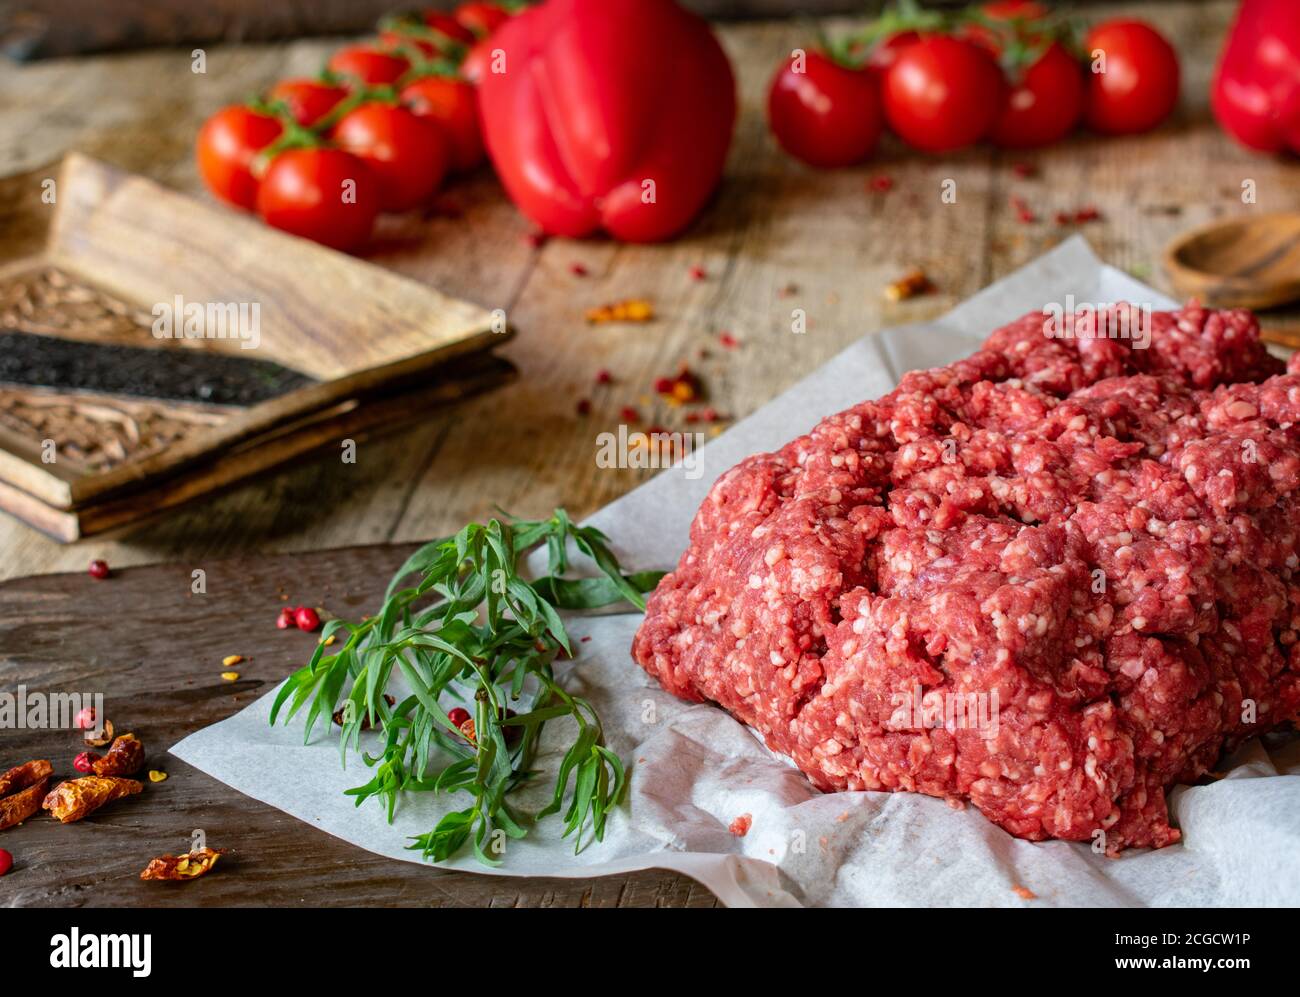 carne macinata fresca e cruda, carne macinata da macellaio su fondo tavola di legno Foto Stock